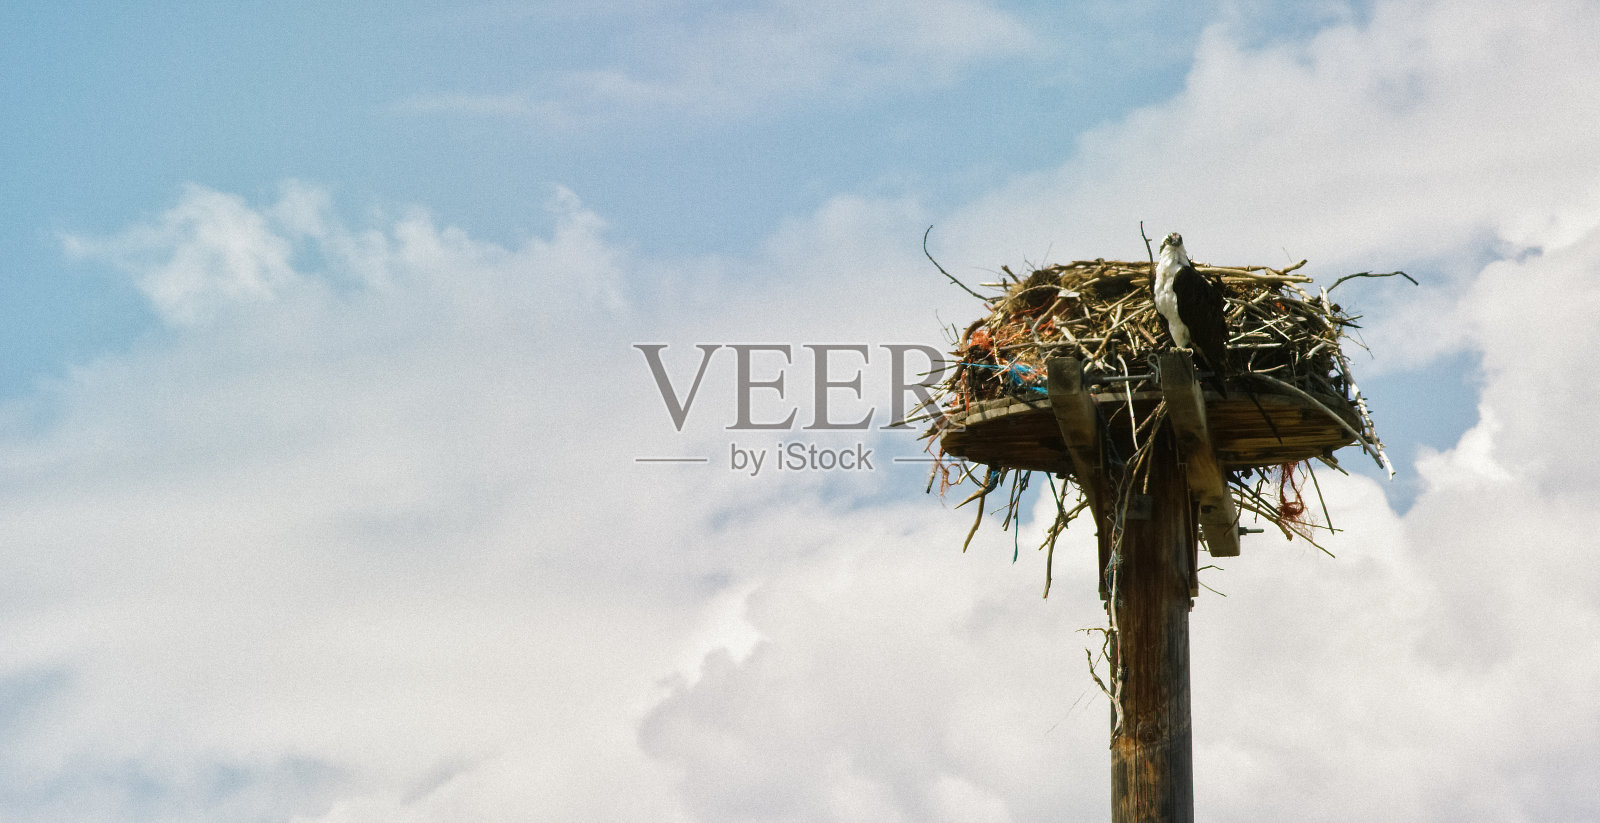 在一个多云的日子里，一只鱼鹰坐在一根高高的木杆的顶端，旁边是它用大树枝和荆棘做成的巢照片摄影图片